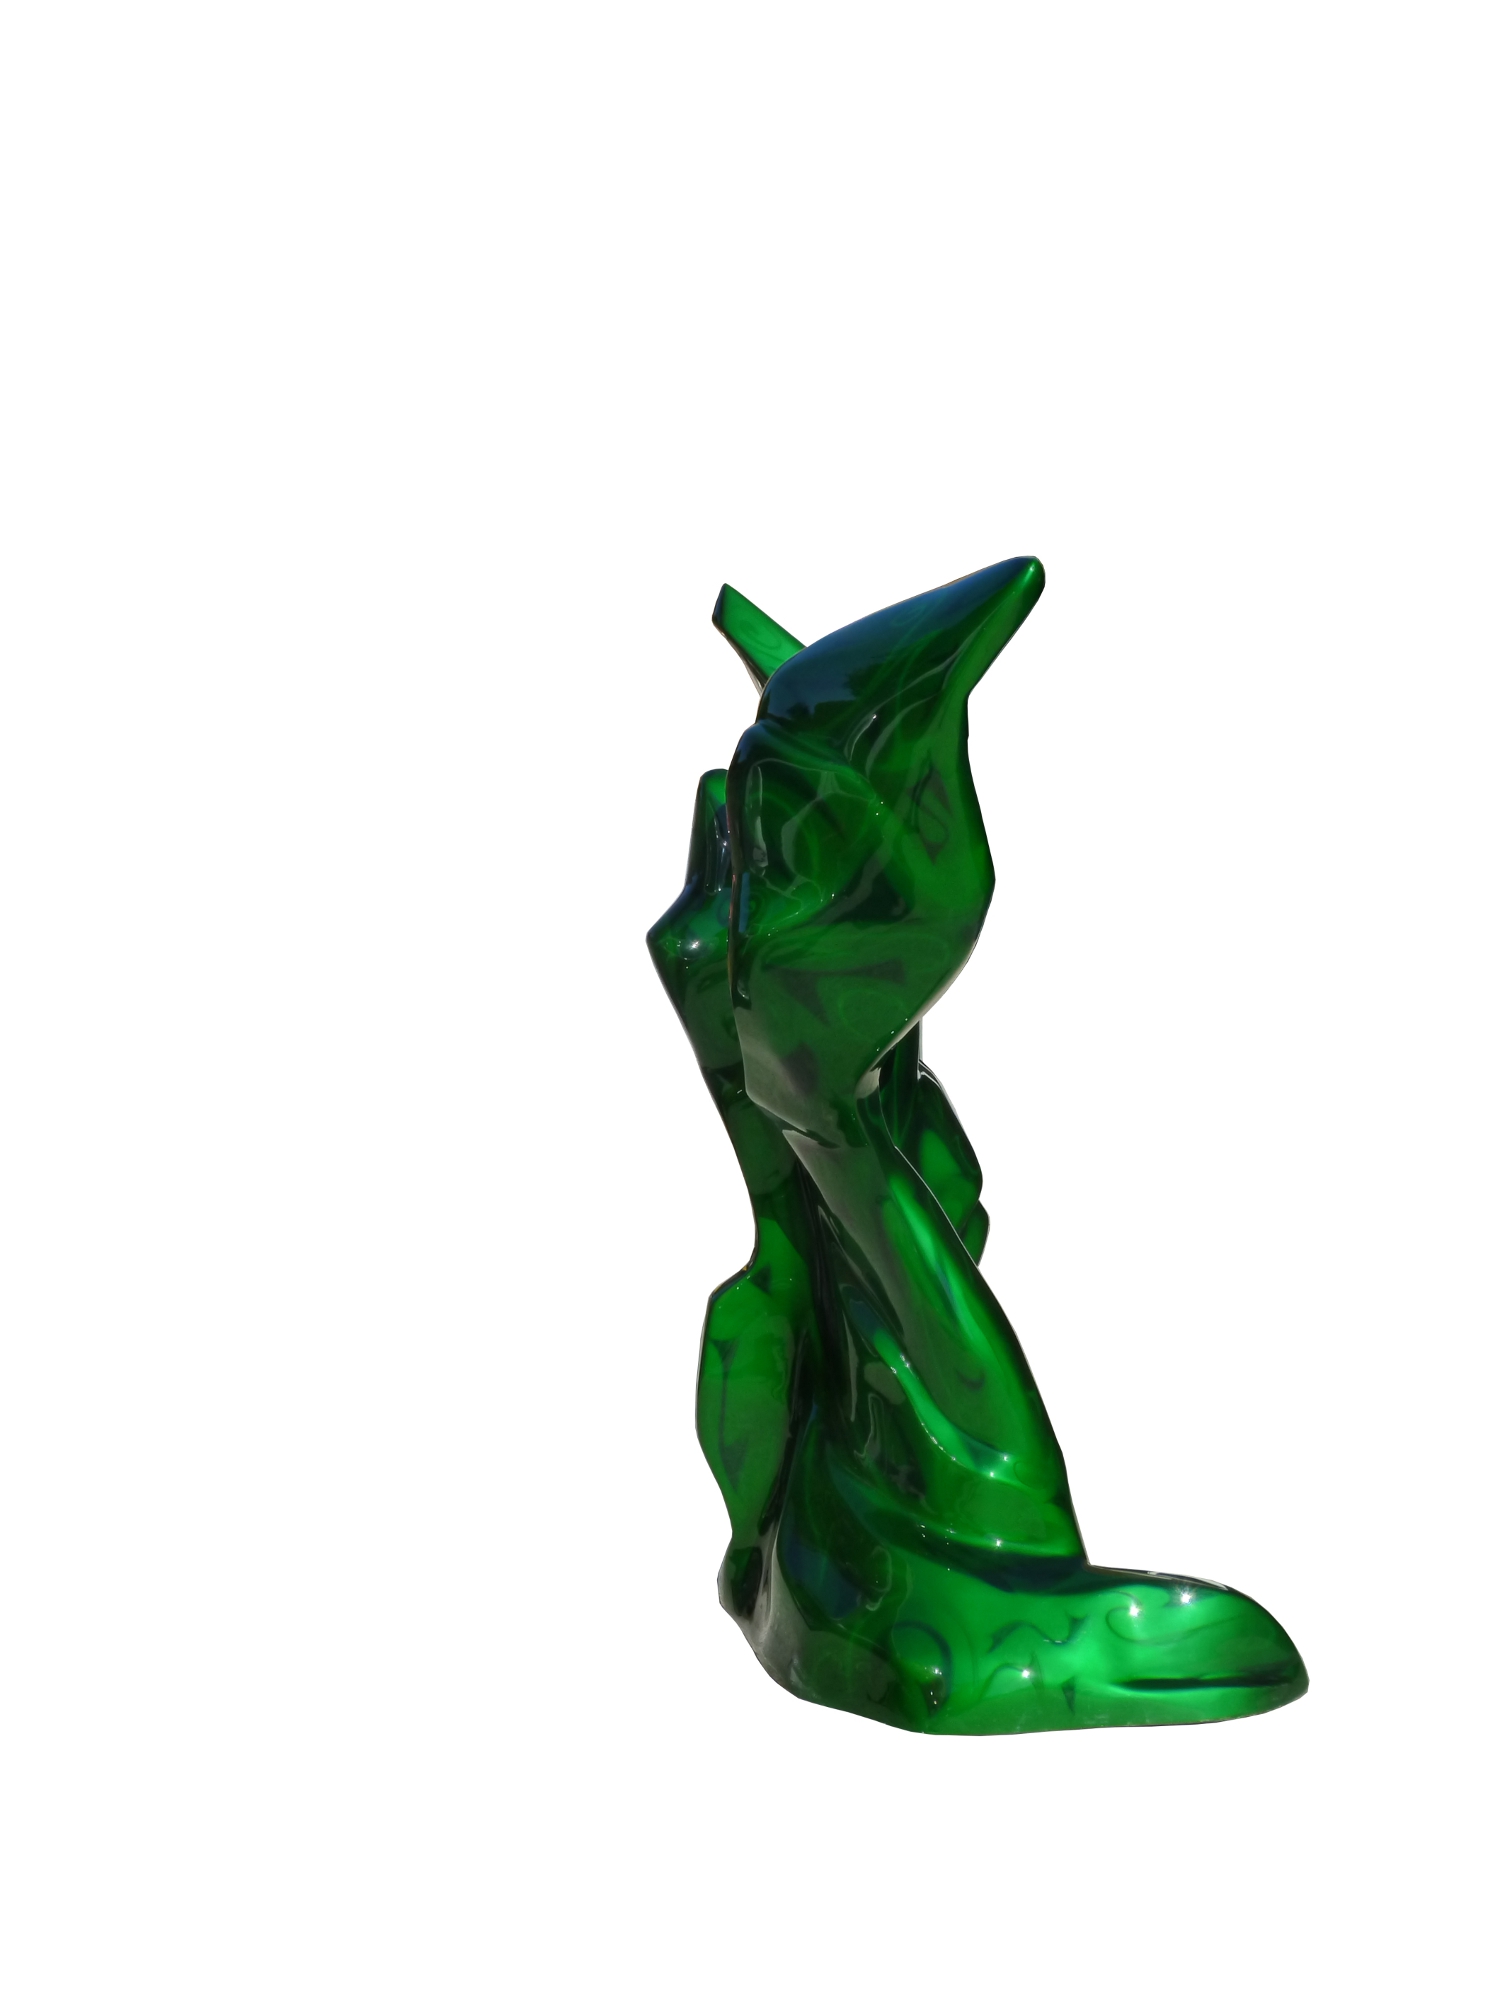 Skulptur Mr.Green 6